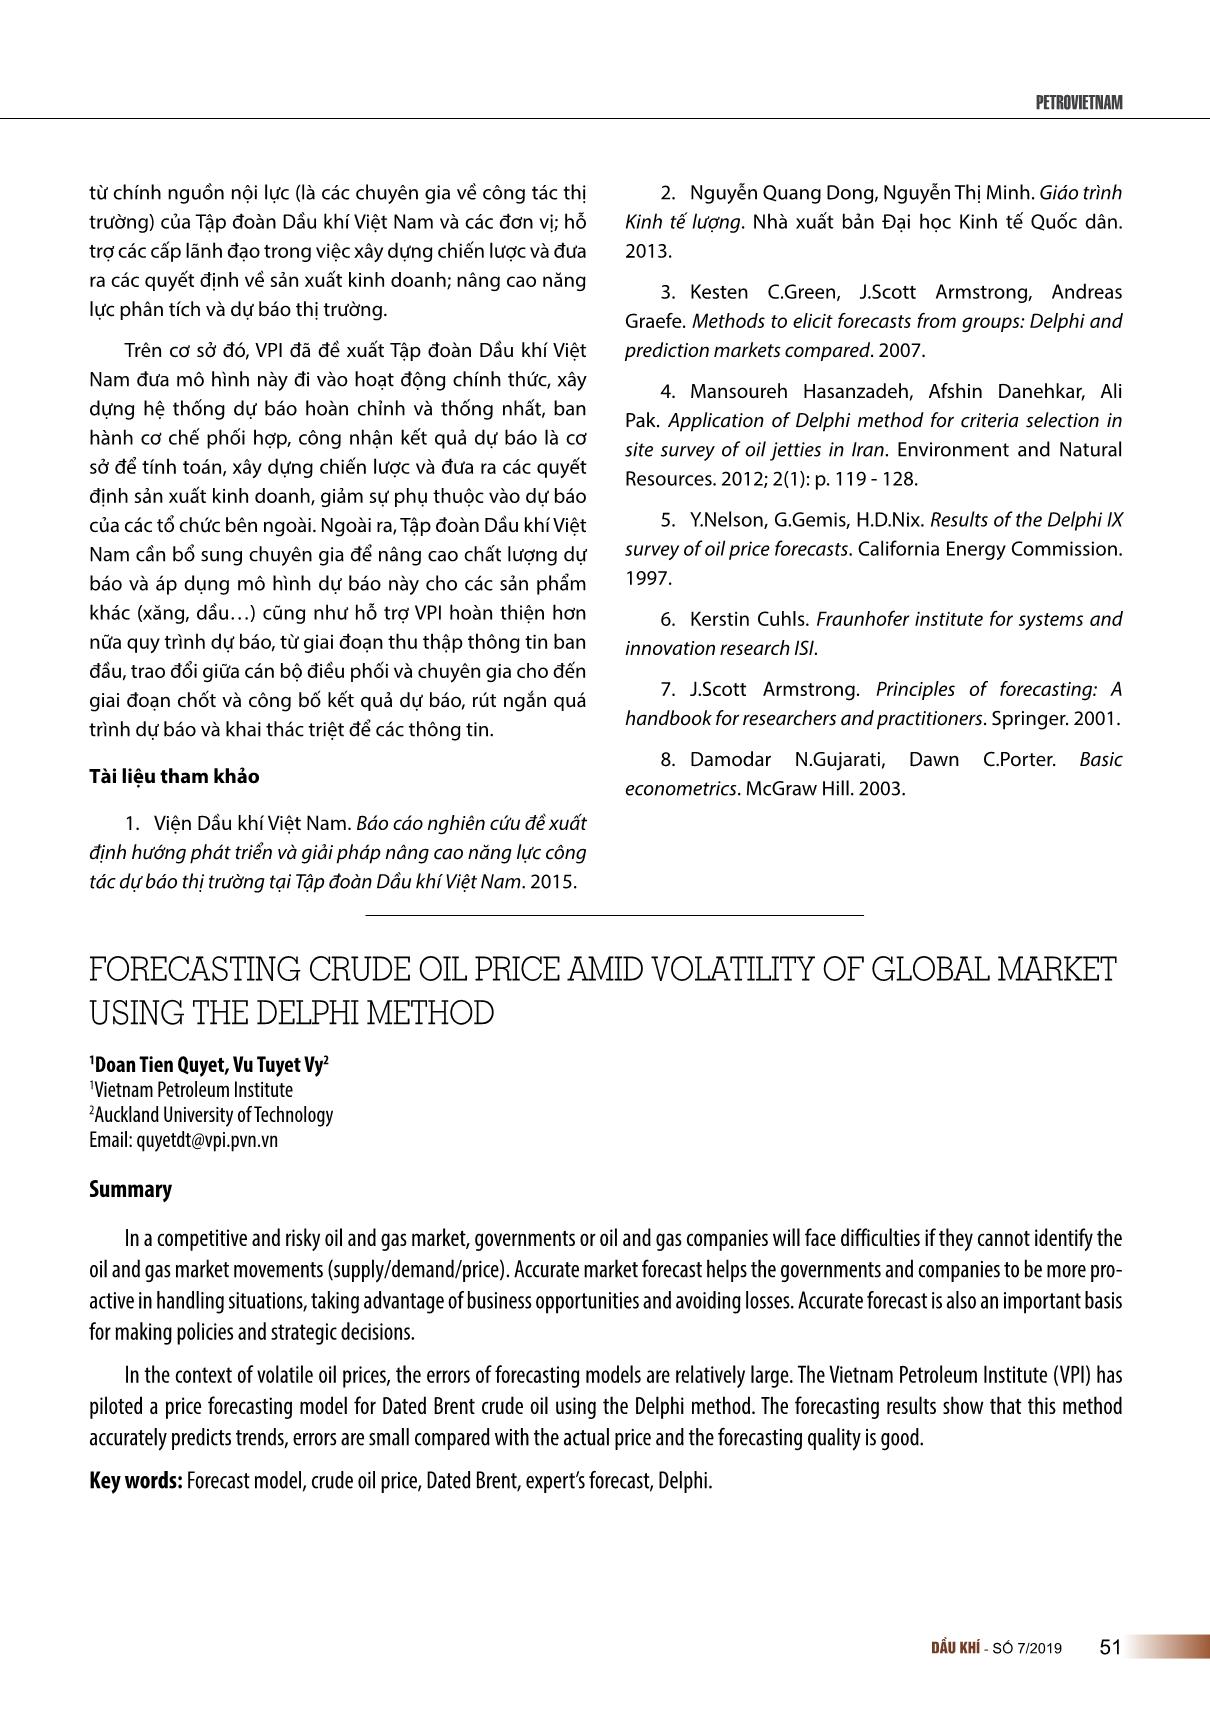 Dự báo giá dầu thô trong giai đoạn thị trường biến động bằng phương pháp Delphi trang 8